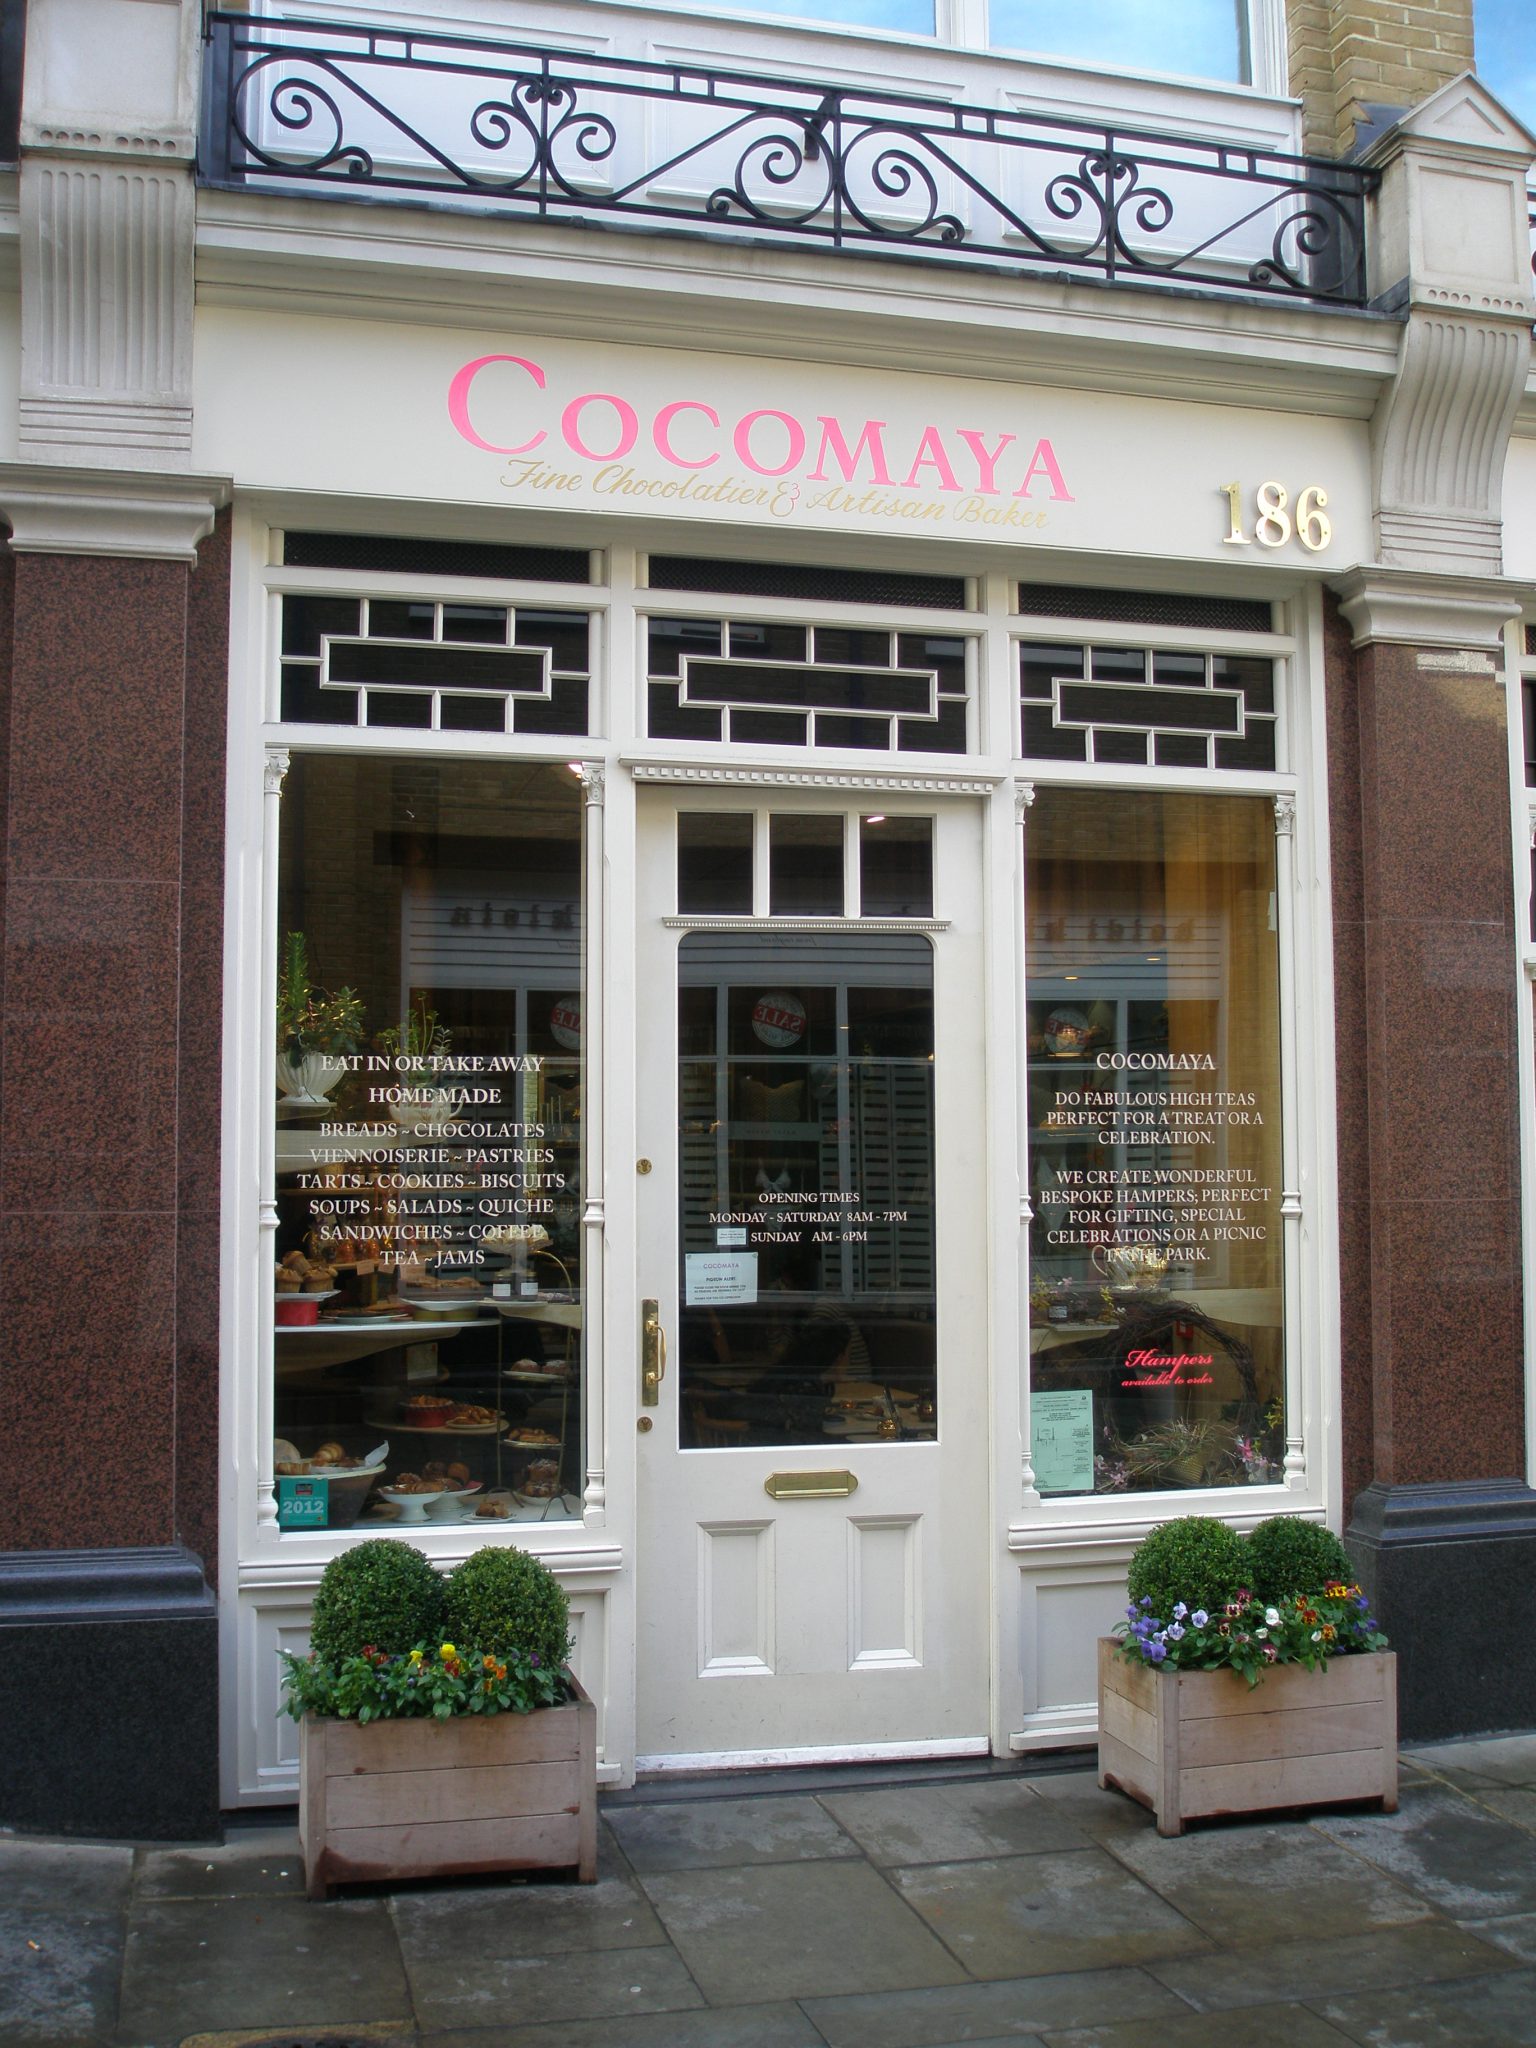 Cocomaya Cafe, near Sloane Square